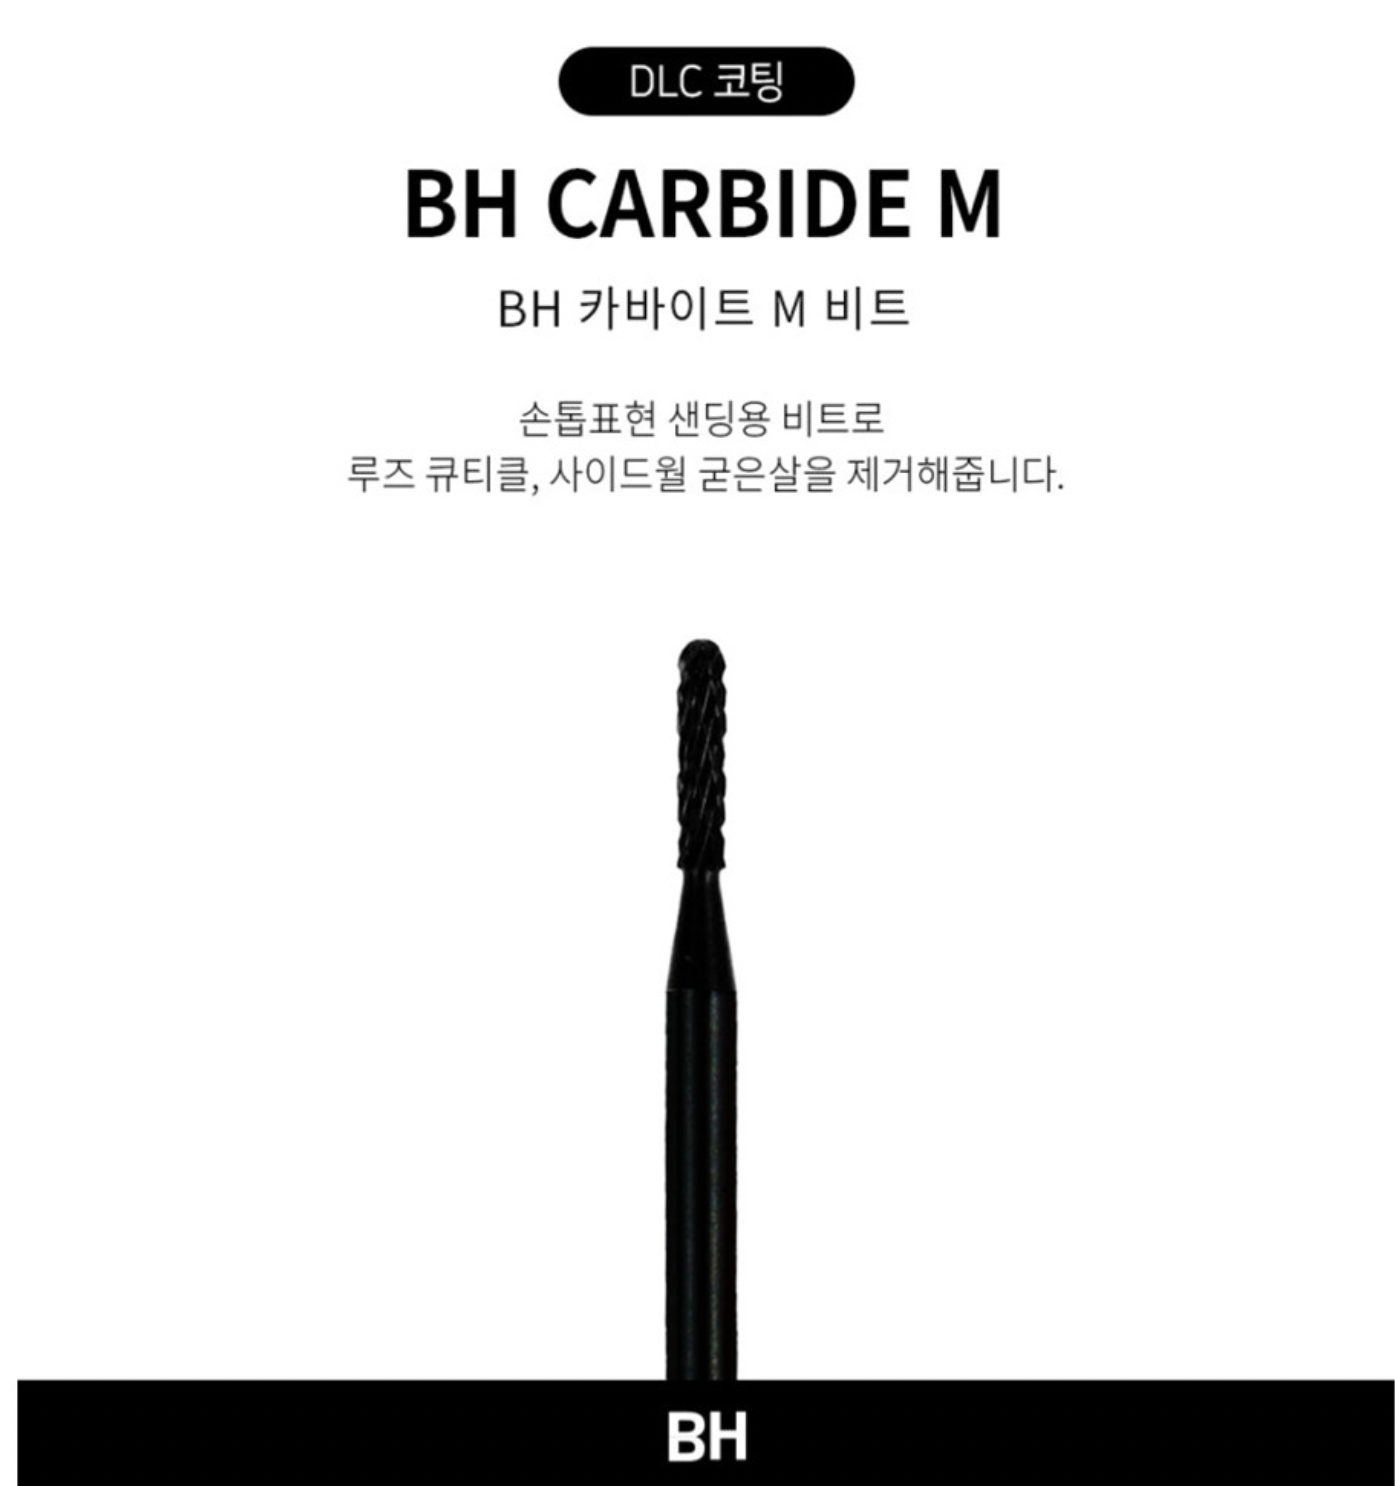 BH BIT Carbide M (Premium DLC)